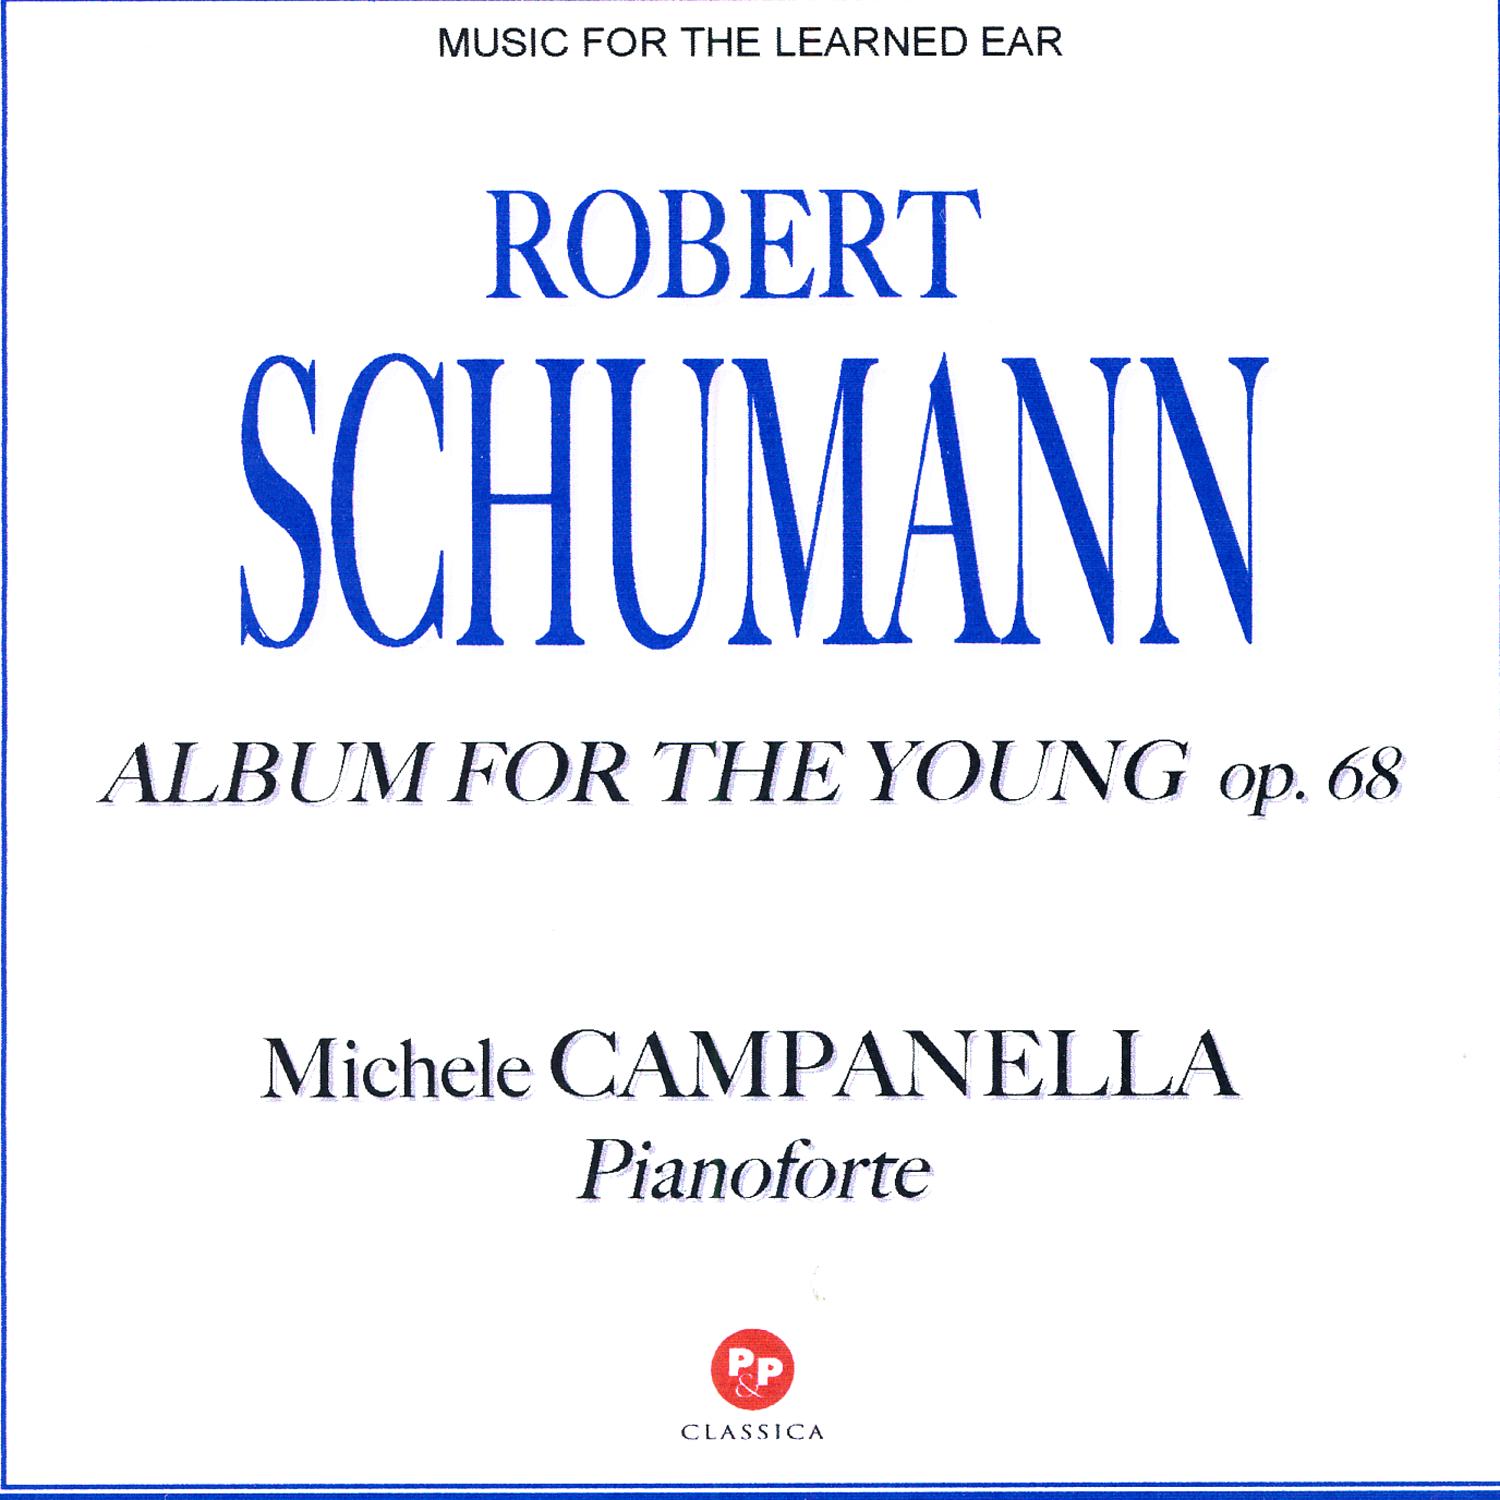 Robert SCHUMANN: Album For The Young - op. 68